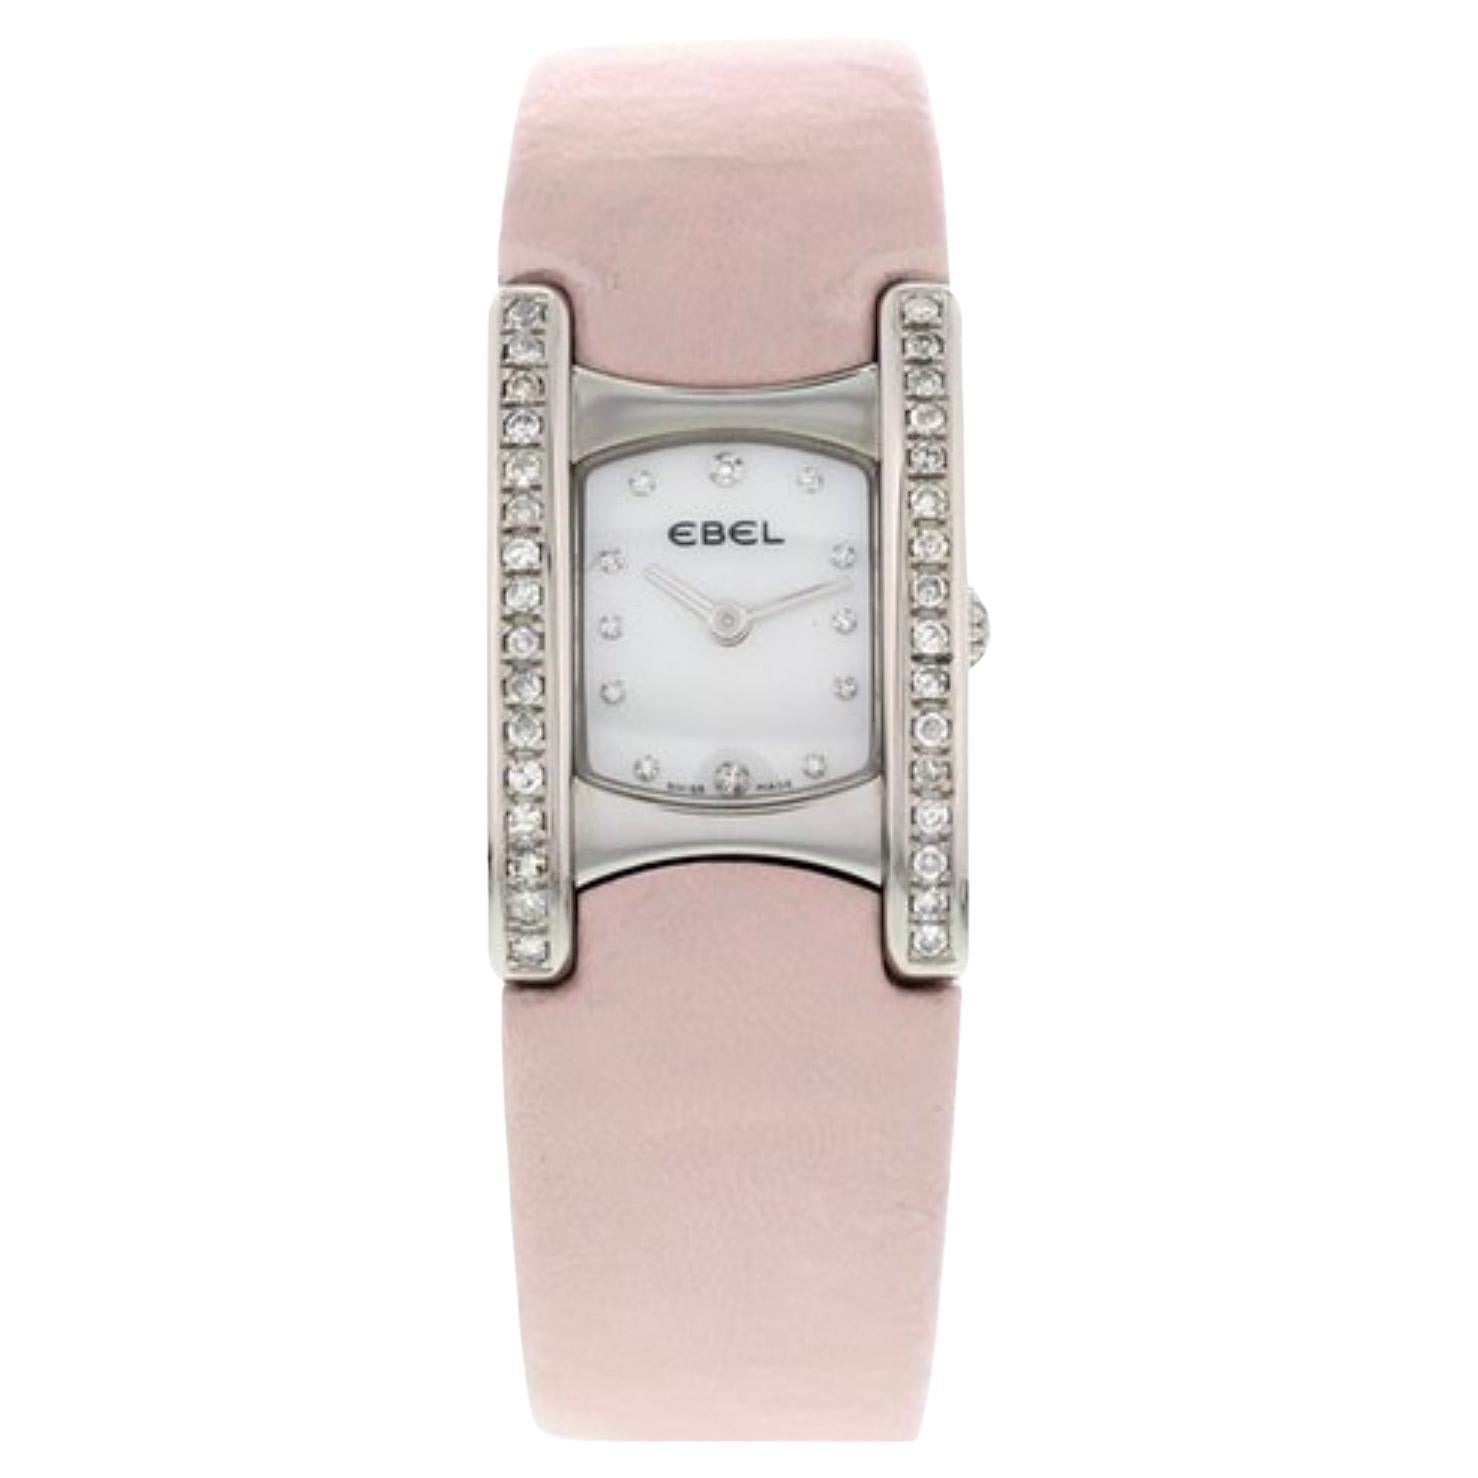 Damen Ebel Beluga Edelstahl mit Diamanten E9057a28-10, rosa Ledergürtel aus Leder